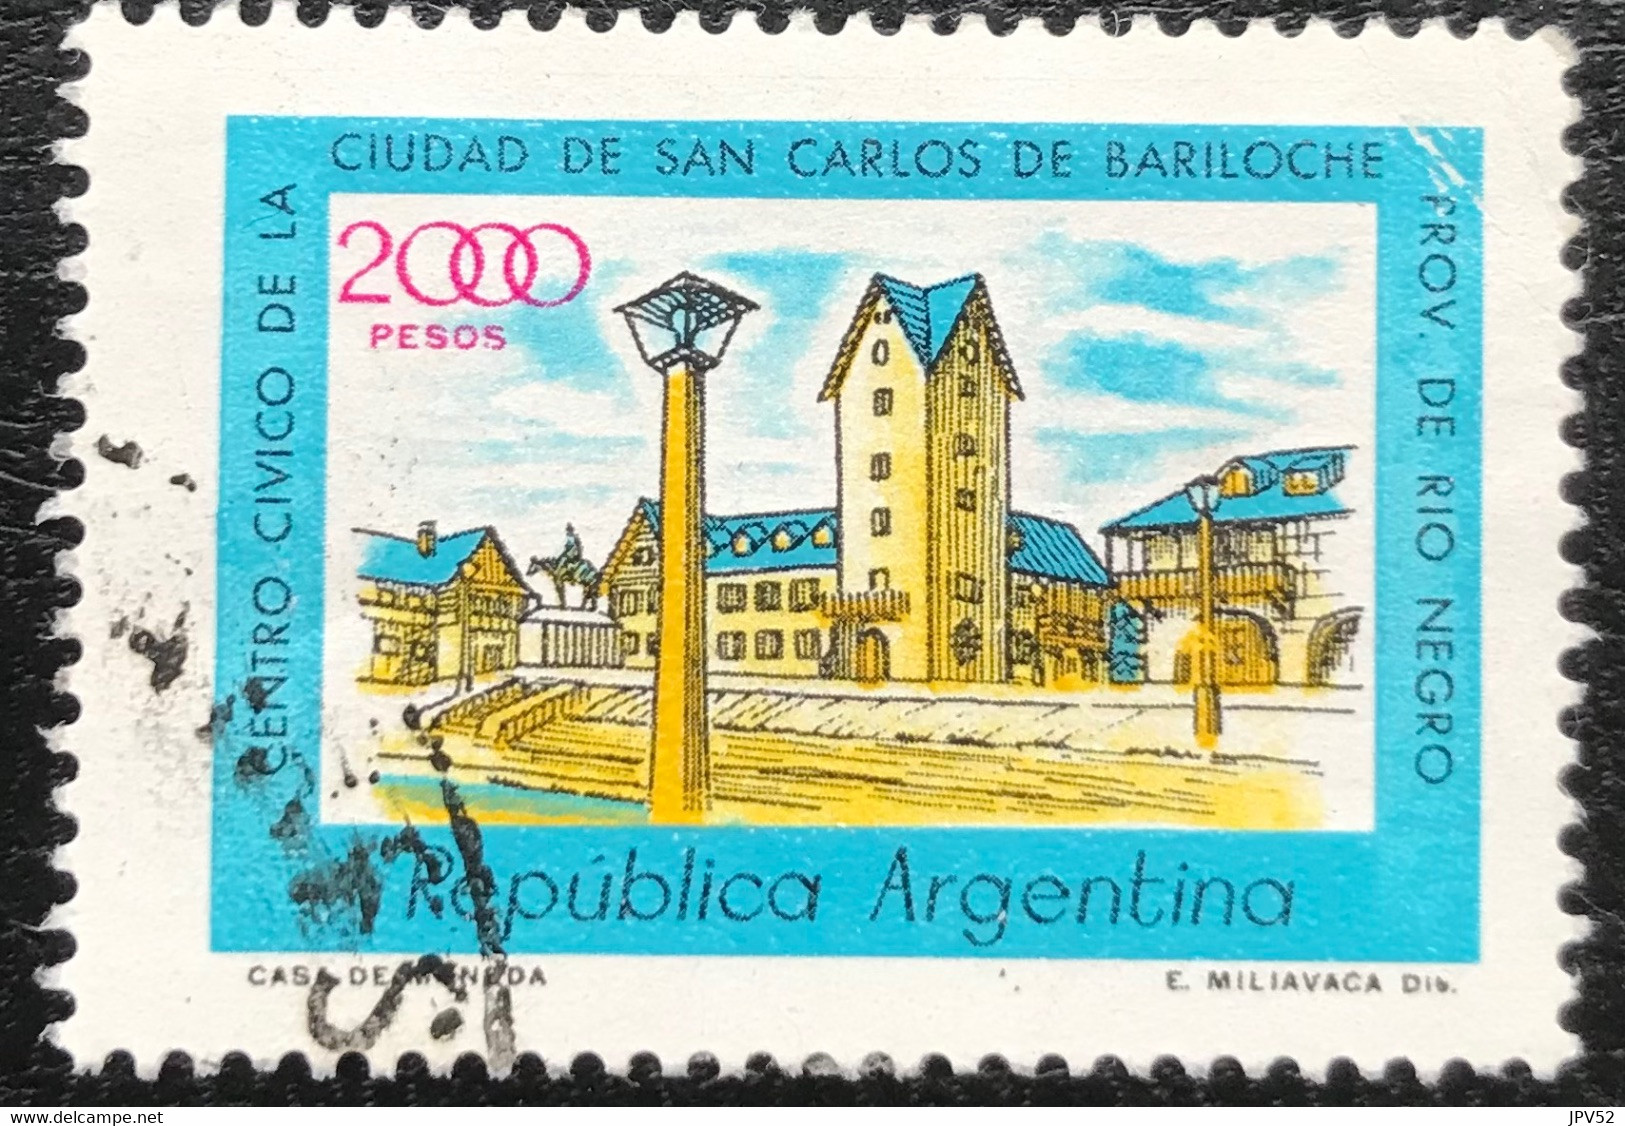 Republica Argentina - Argentinië - C11/39 - (°)used - 1980 - Michel 1456 - Bariloche - Usati